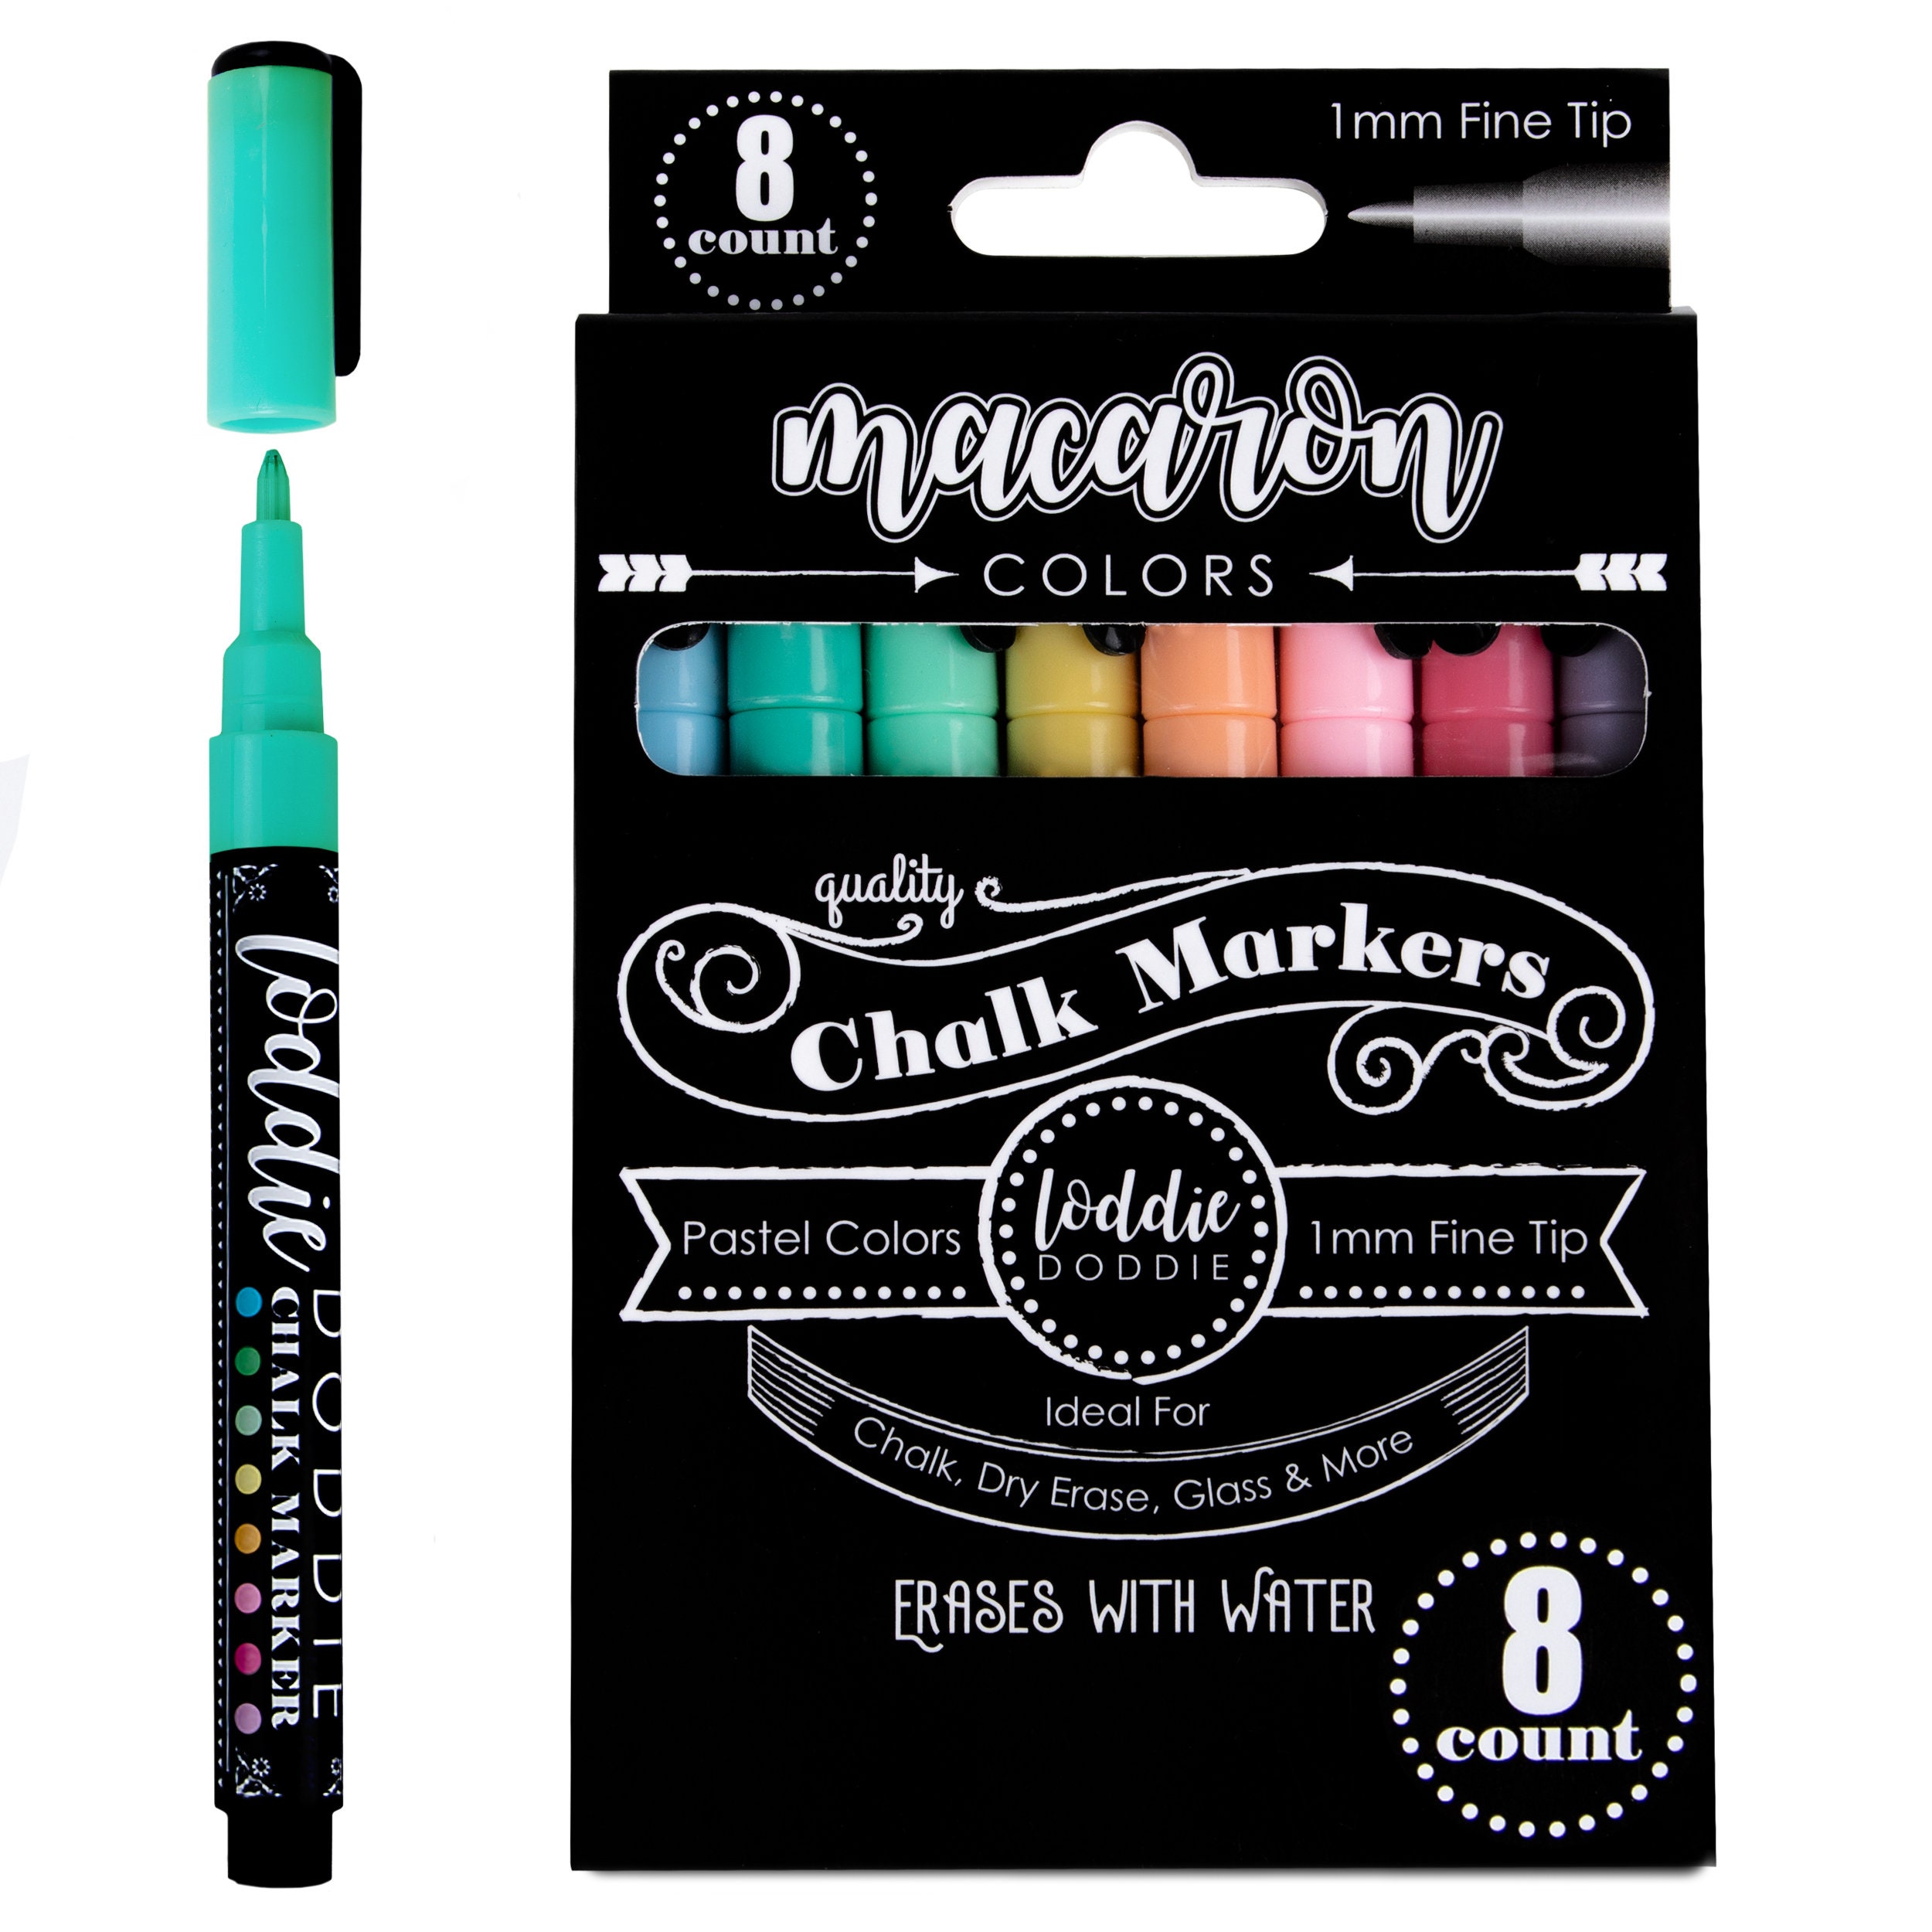 Omega Chalkboard Chalk in Color, Vintage Box of Chalk Mint